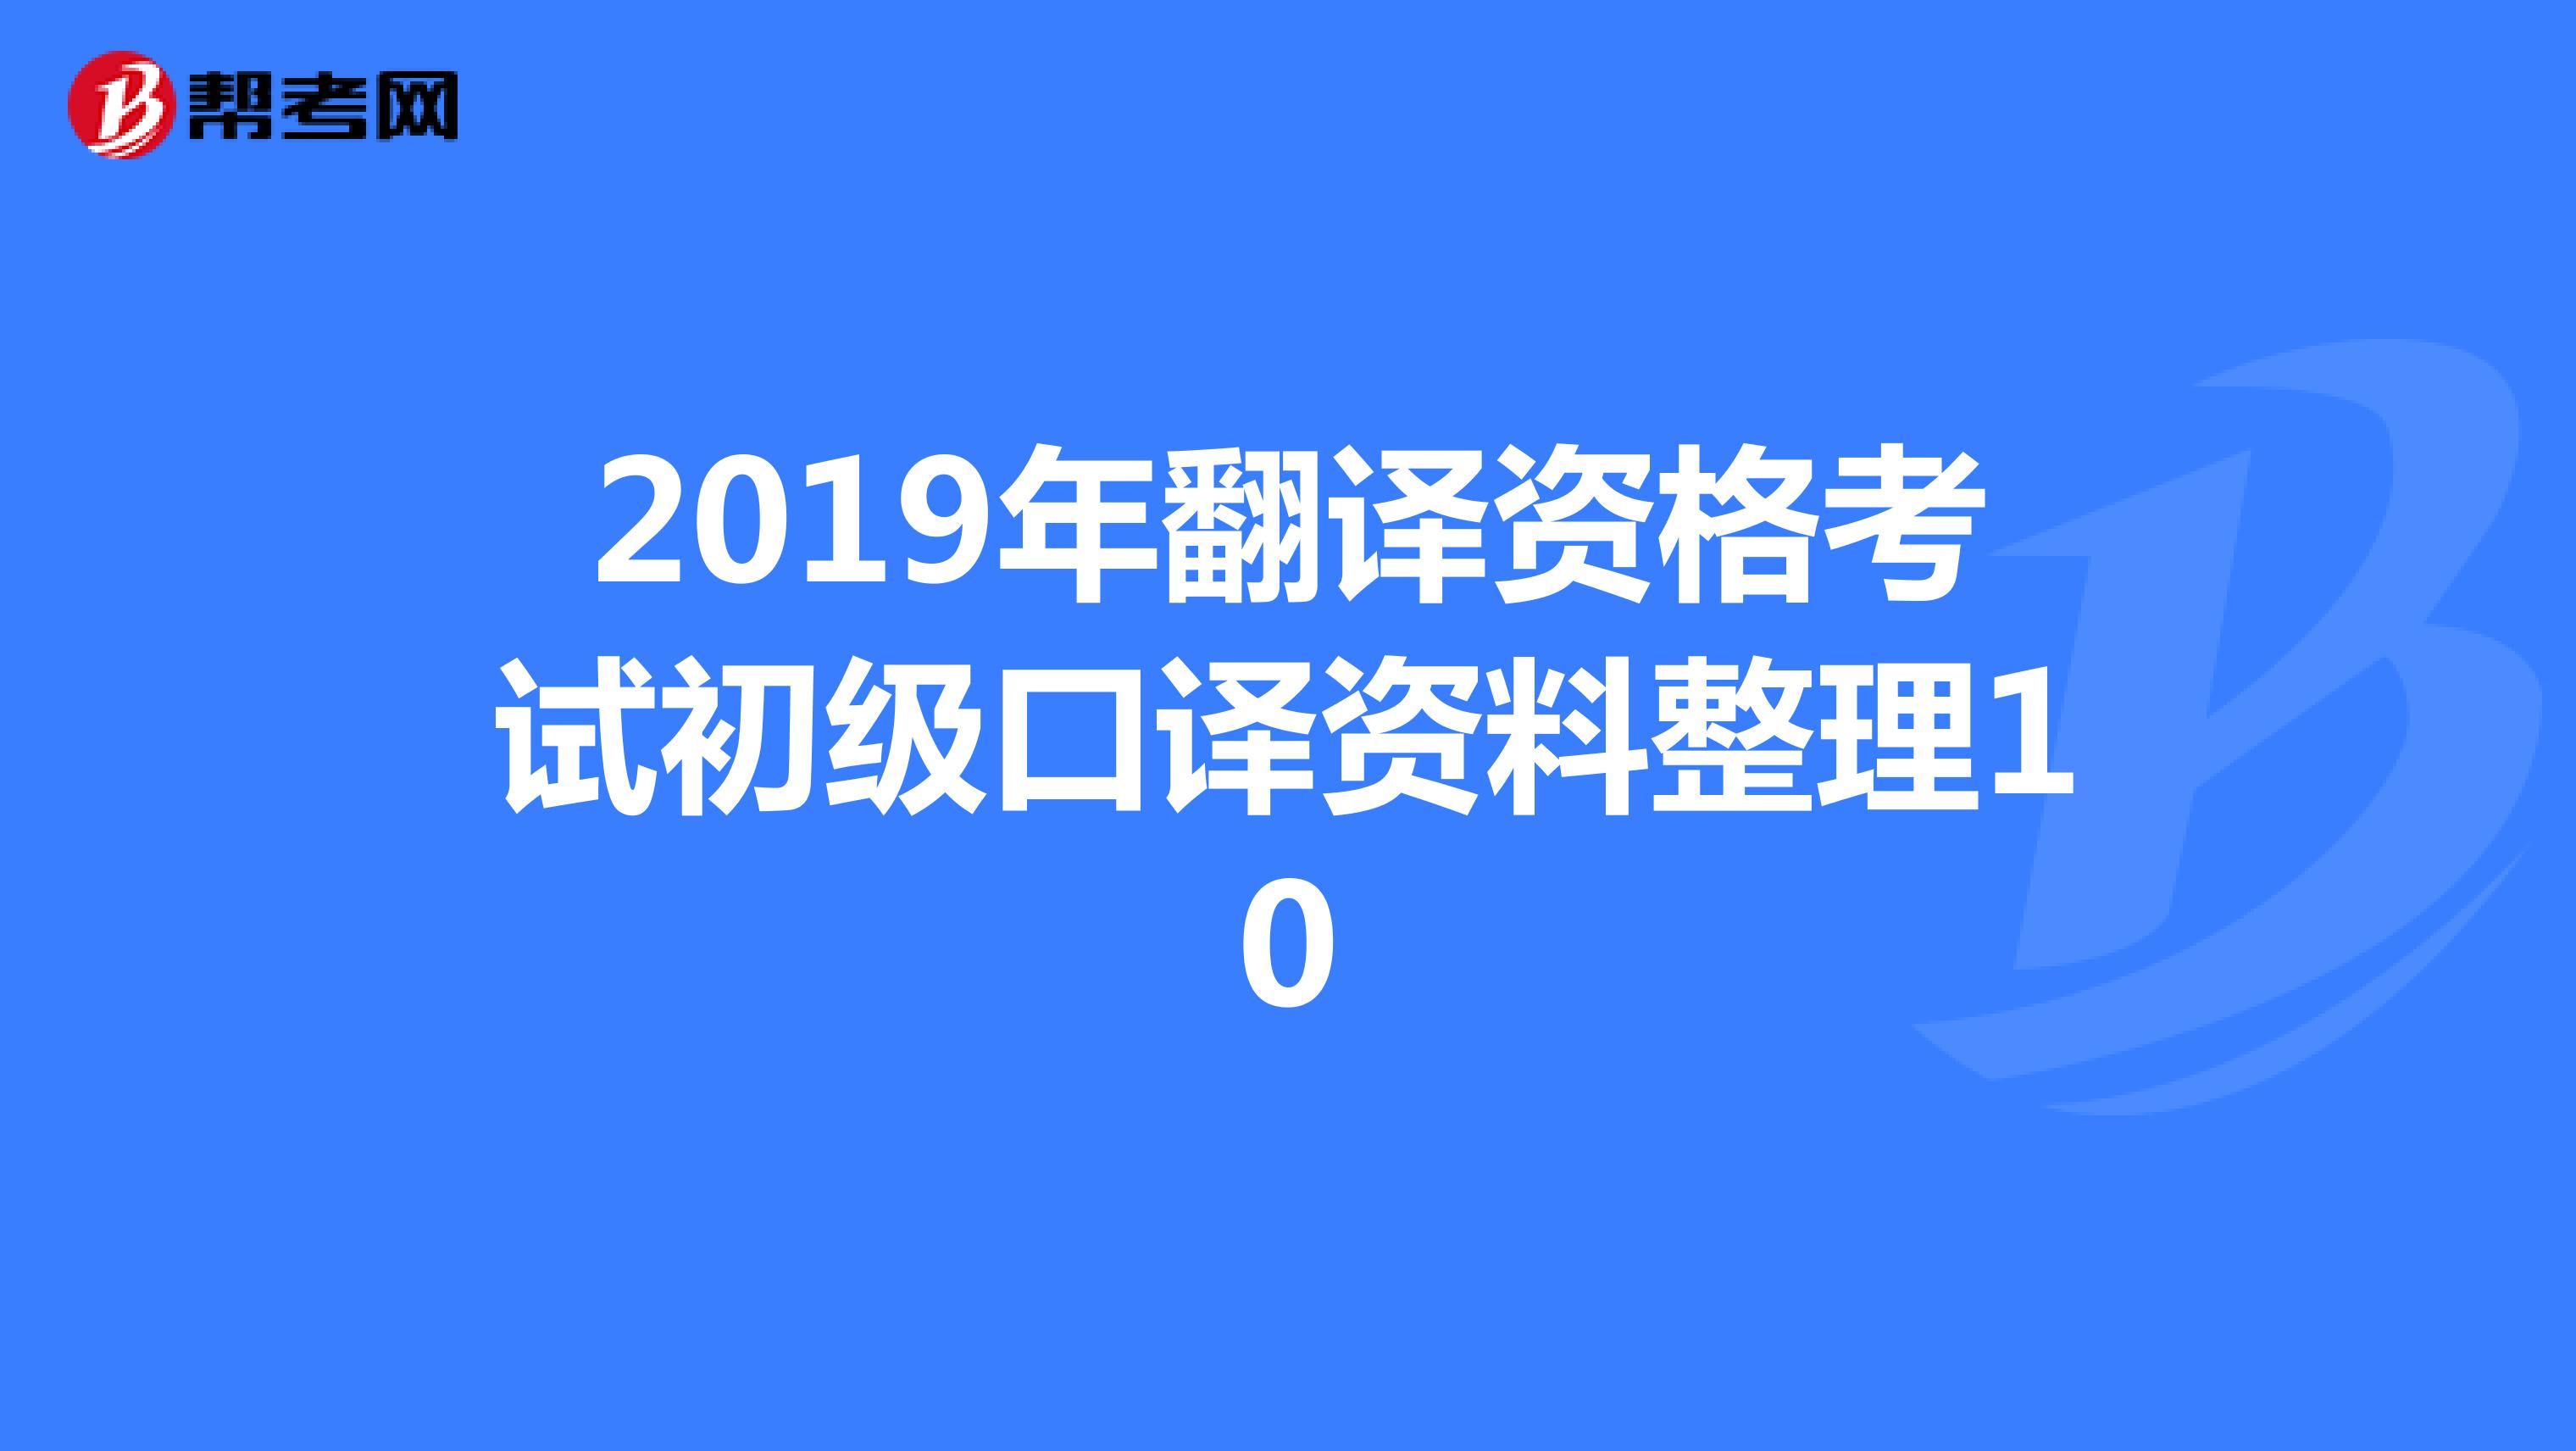 2019年翻译资格考试初级口译资料整理10